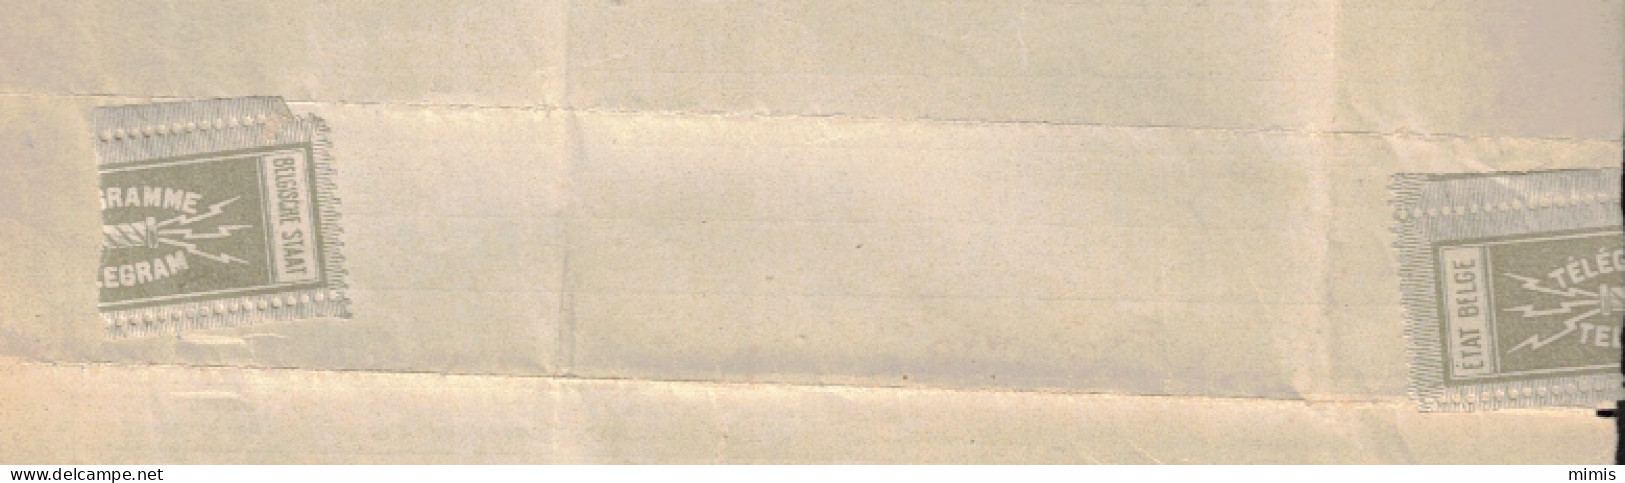 BELGIQUE      Télégramme  1922   Solvay   Avec étiquette De Fermeture - Telegramme